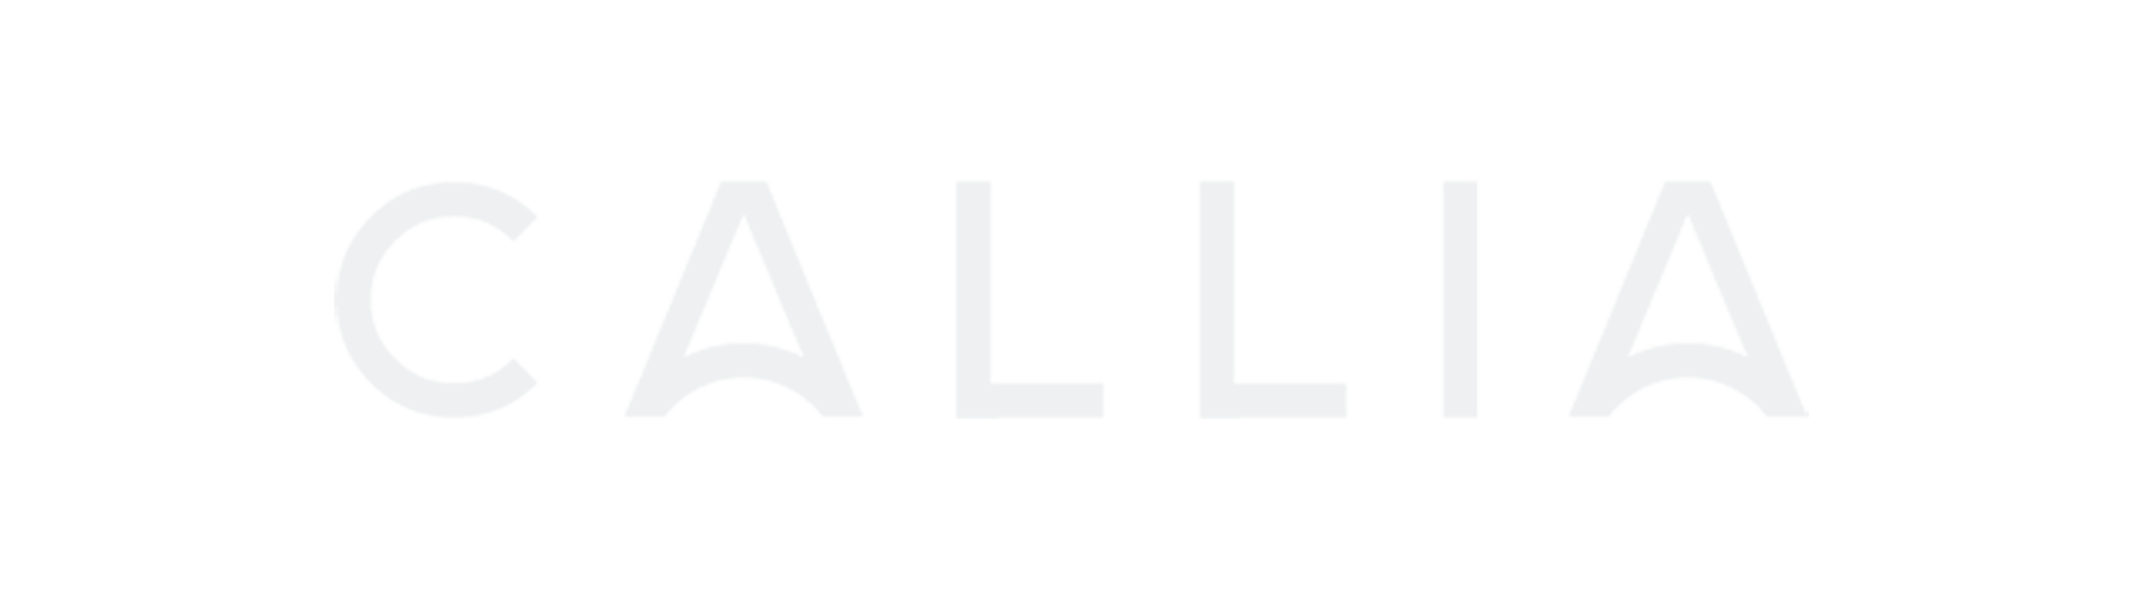 Callia logo white